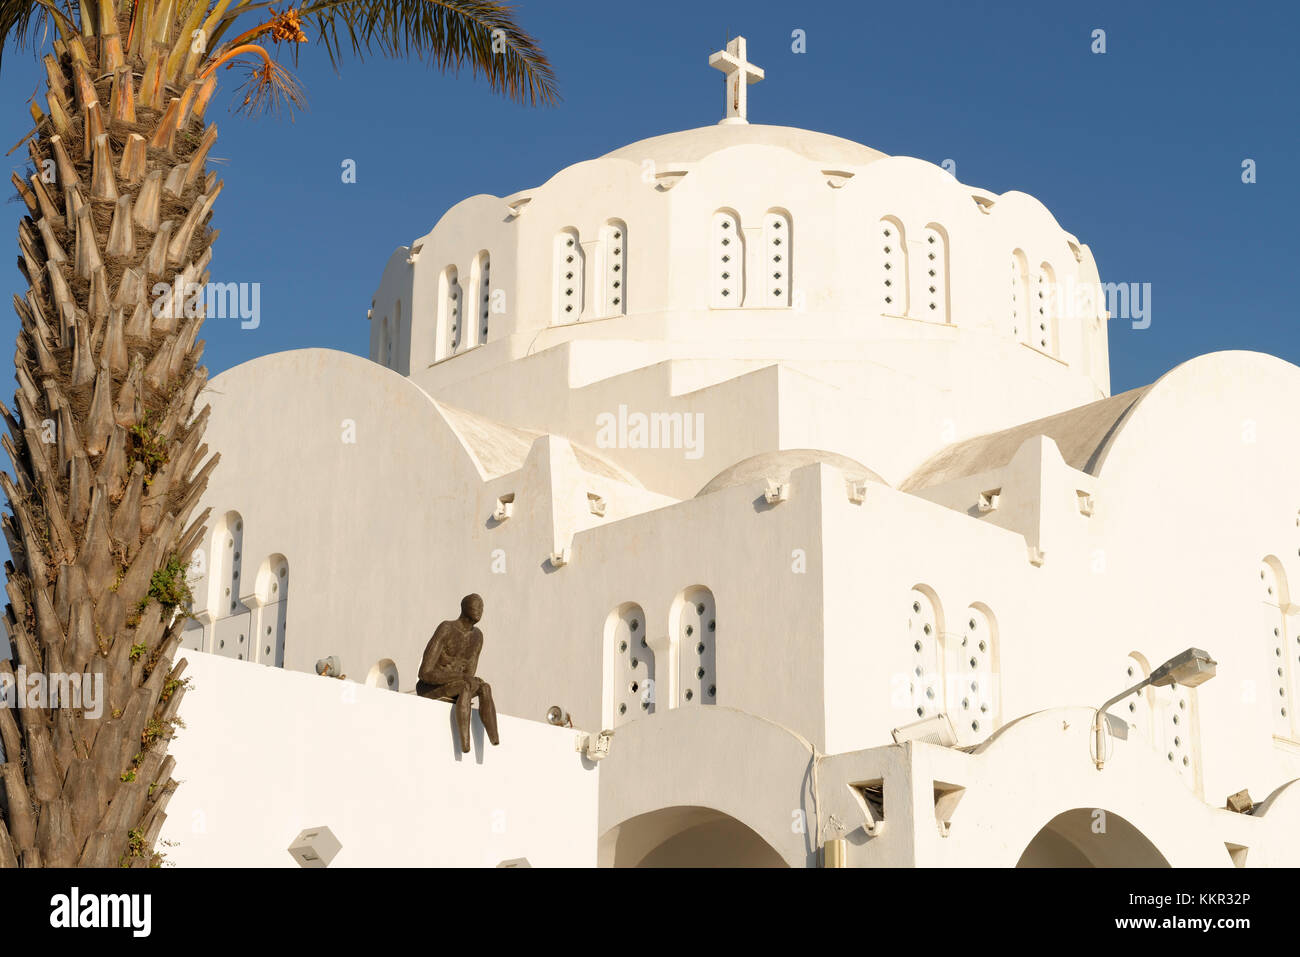 Cathédrale de Fira, île de Santorin, la mer Égée, les Cyclades, îles de la mer Égée, Grèce Banque D'Images